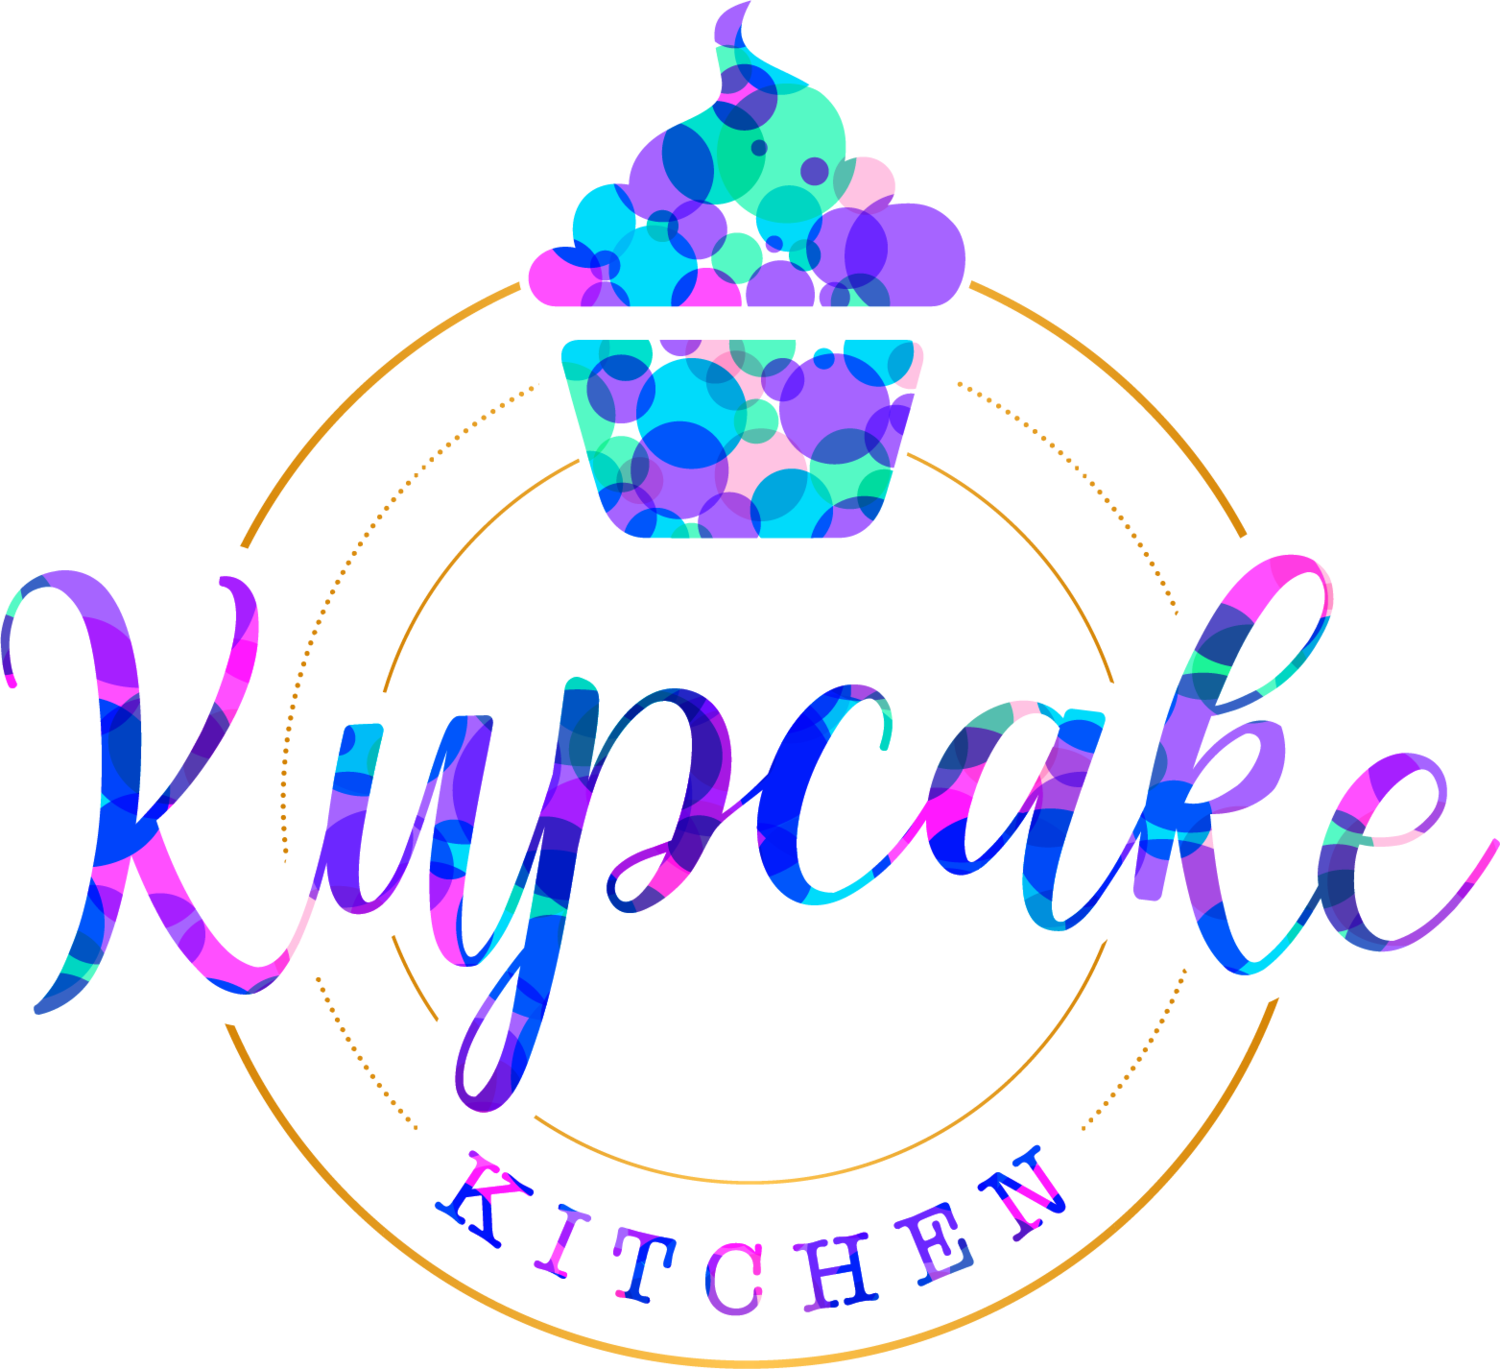 Kupcake Kitchen